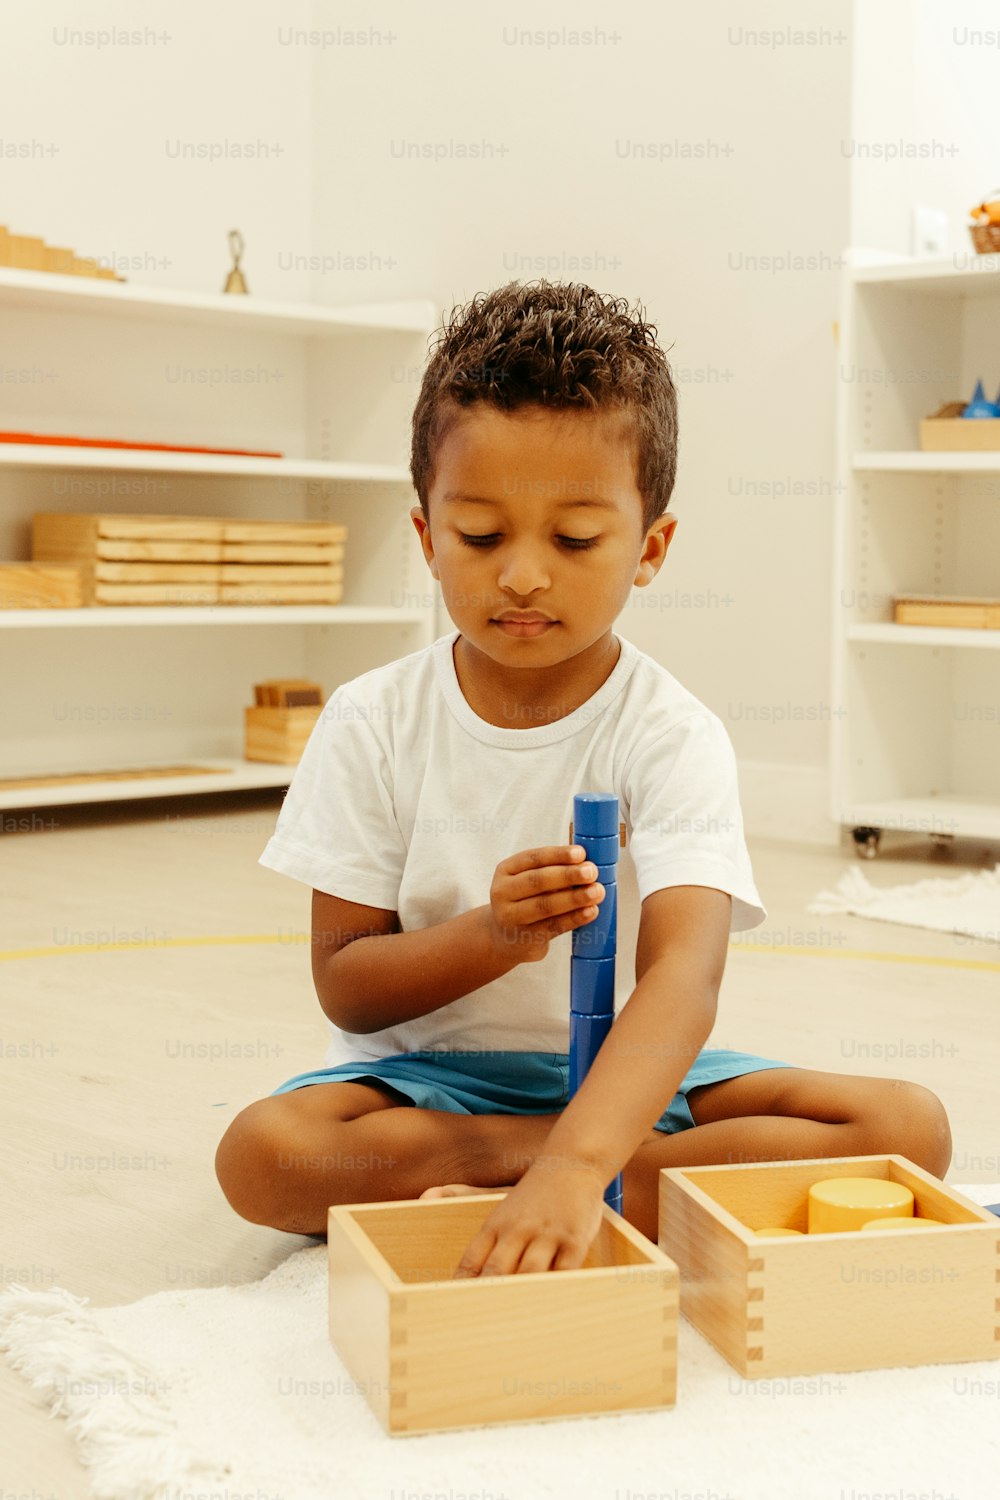 Ein kleiner Junge, der auf dem Boden sitzt und mit einer blauen Zahnbürste spielt